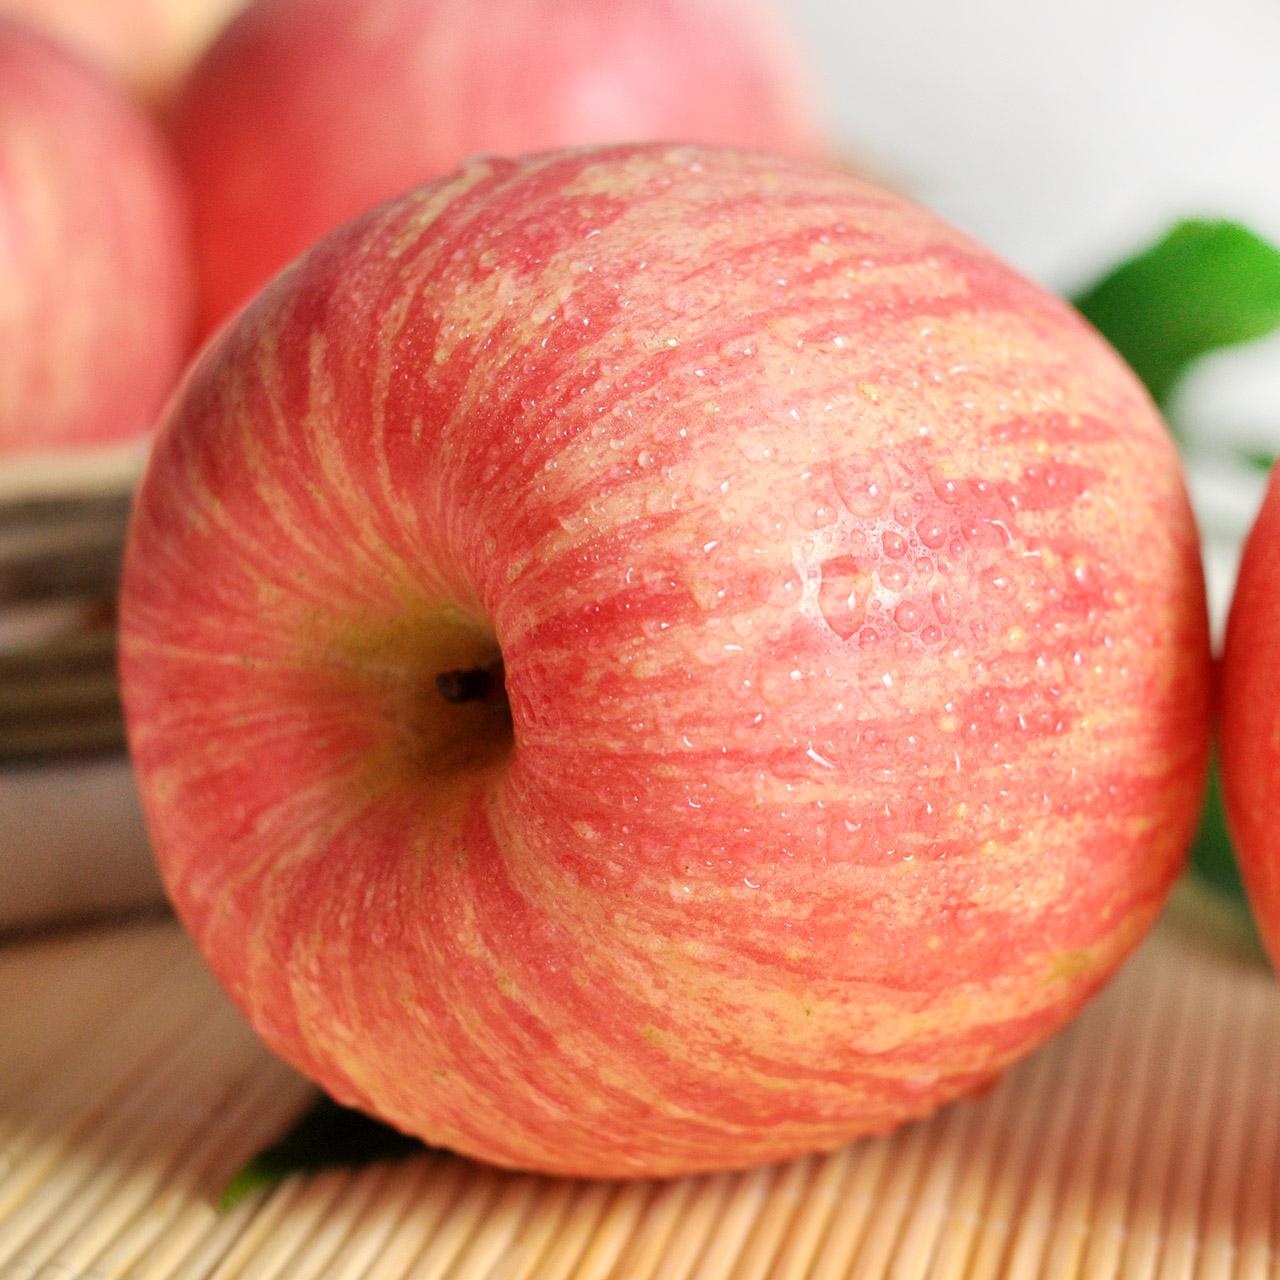 苹果减肥法介绍 苹果减肥法的副作用介绍